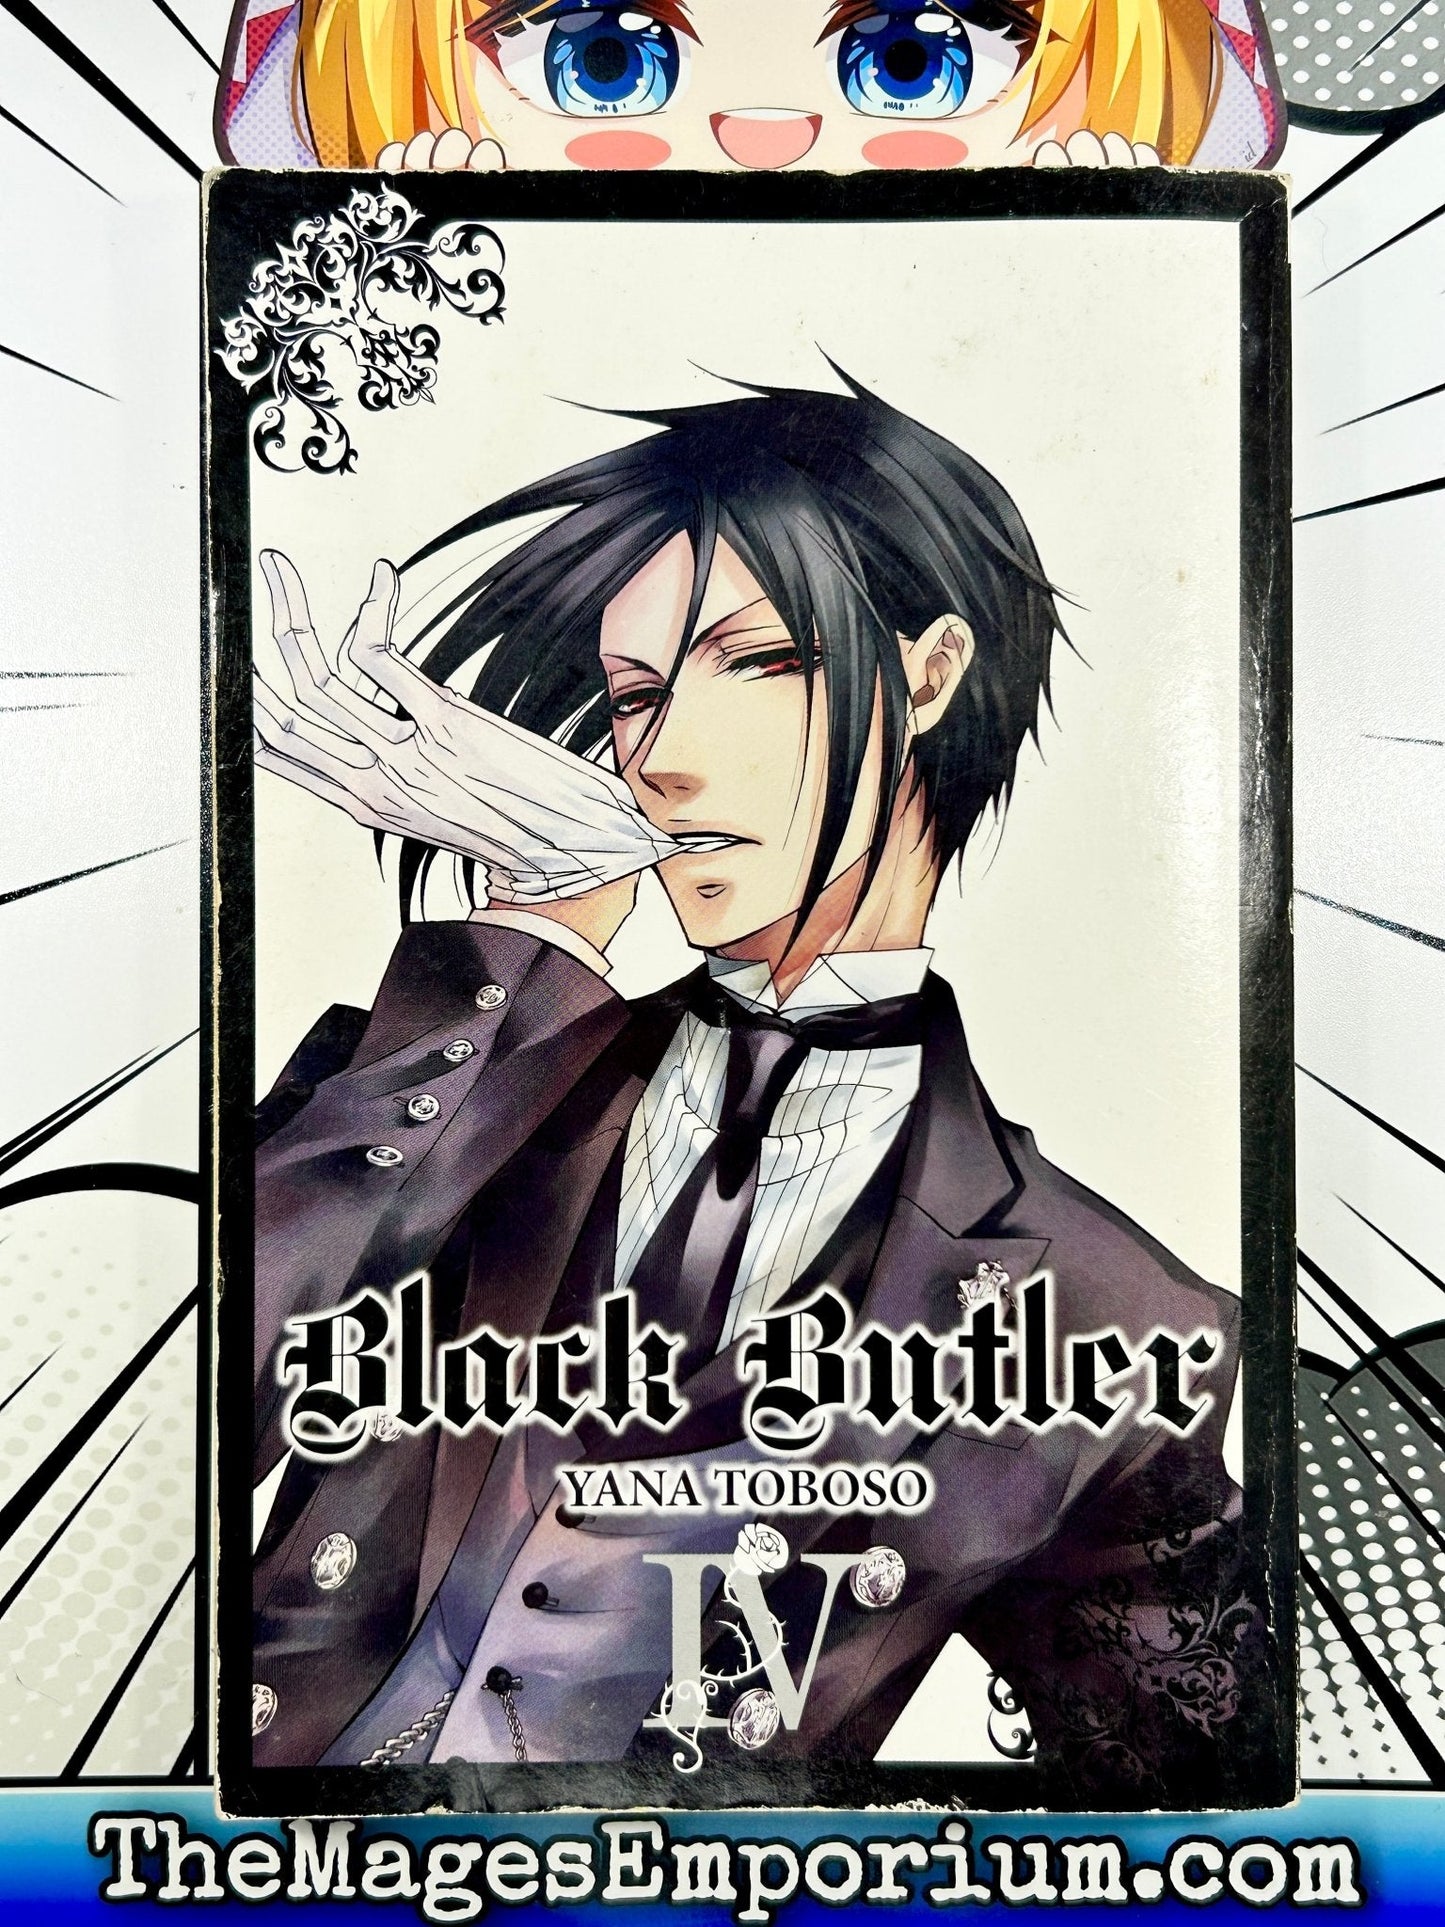 Black Butler Vol 4